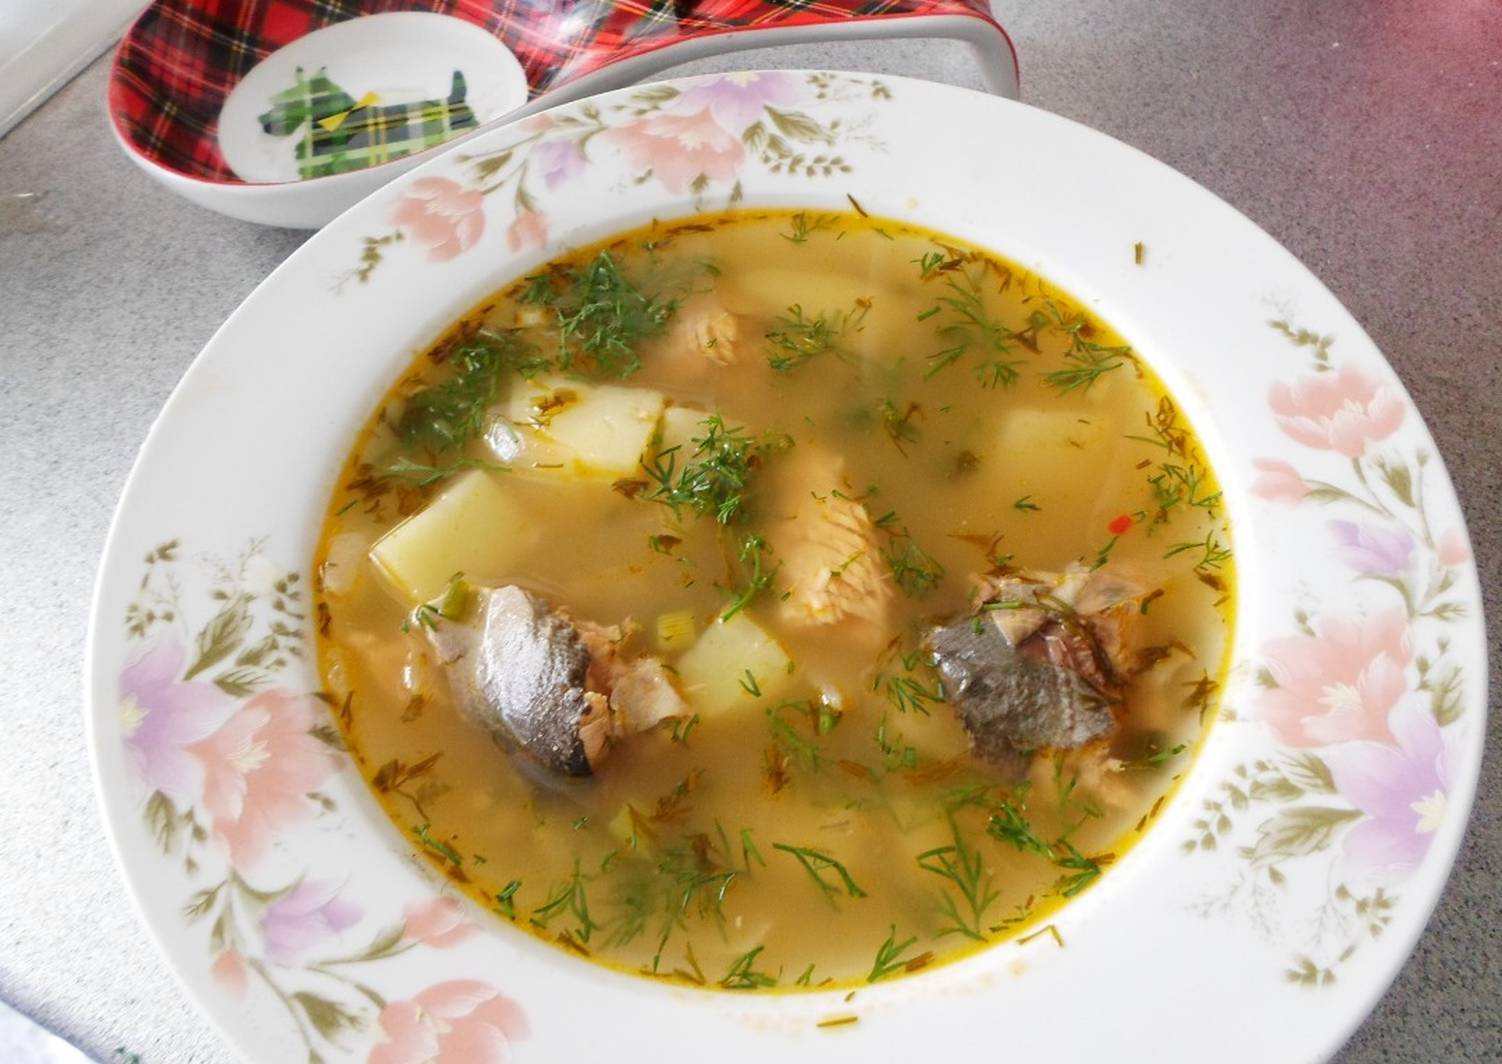 Рыбный суп из горбуши – как сварить по пошаговому рецепту + калорийность и польза супа